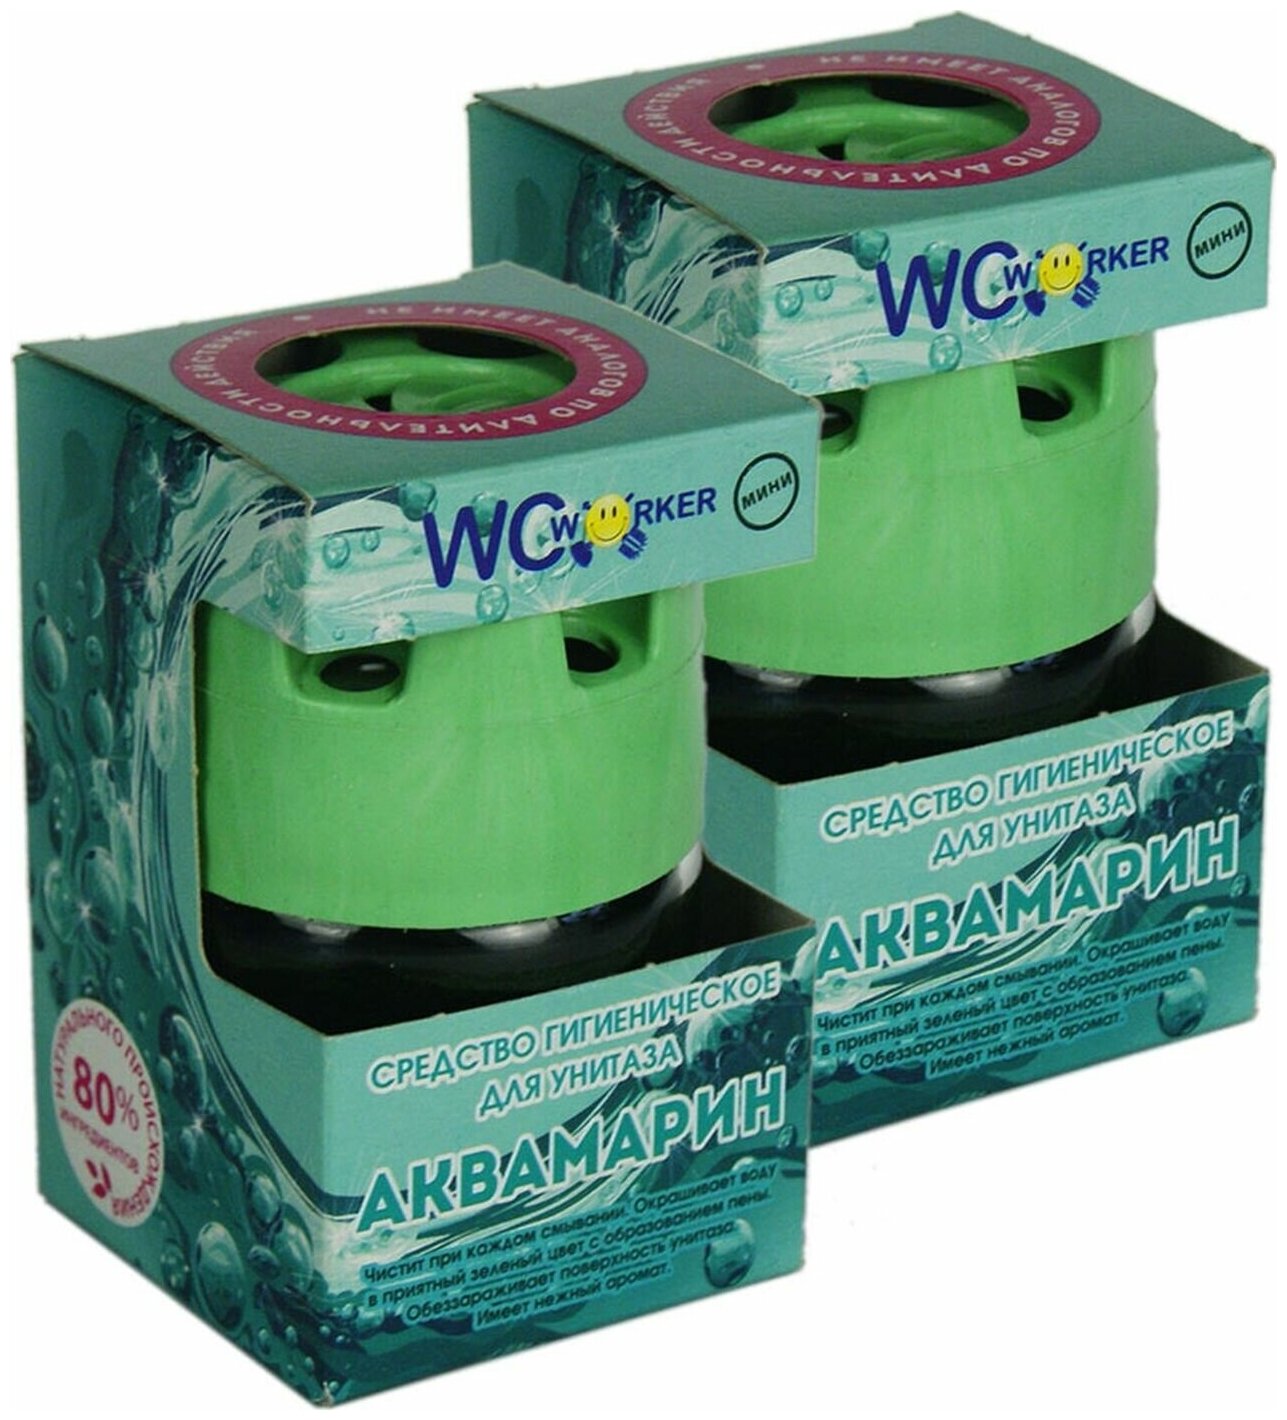 WC Worker средство гигиеническое для унитаза Аквамарин